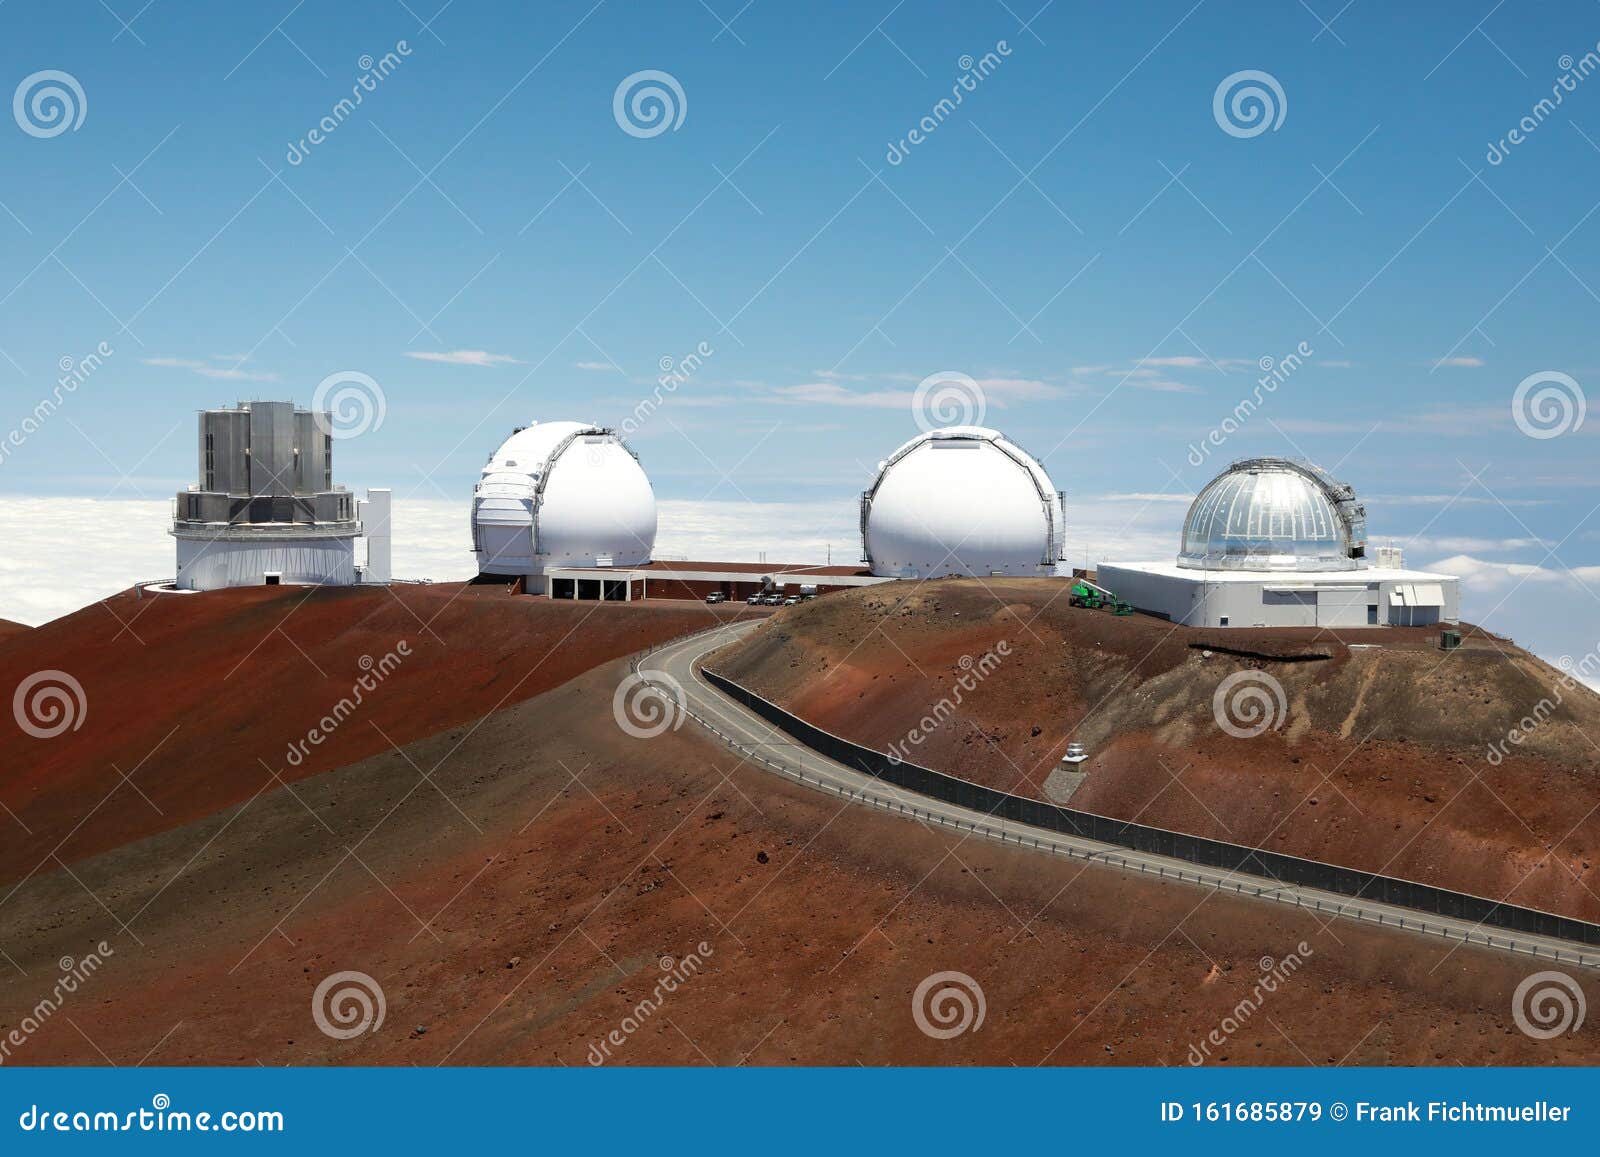 今天来到了夏威夷大岛的莫纳克亚天文台